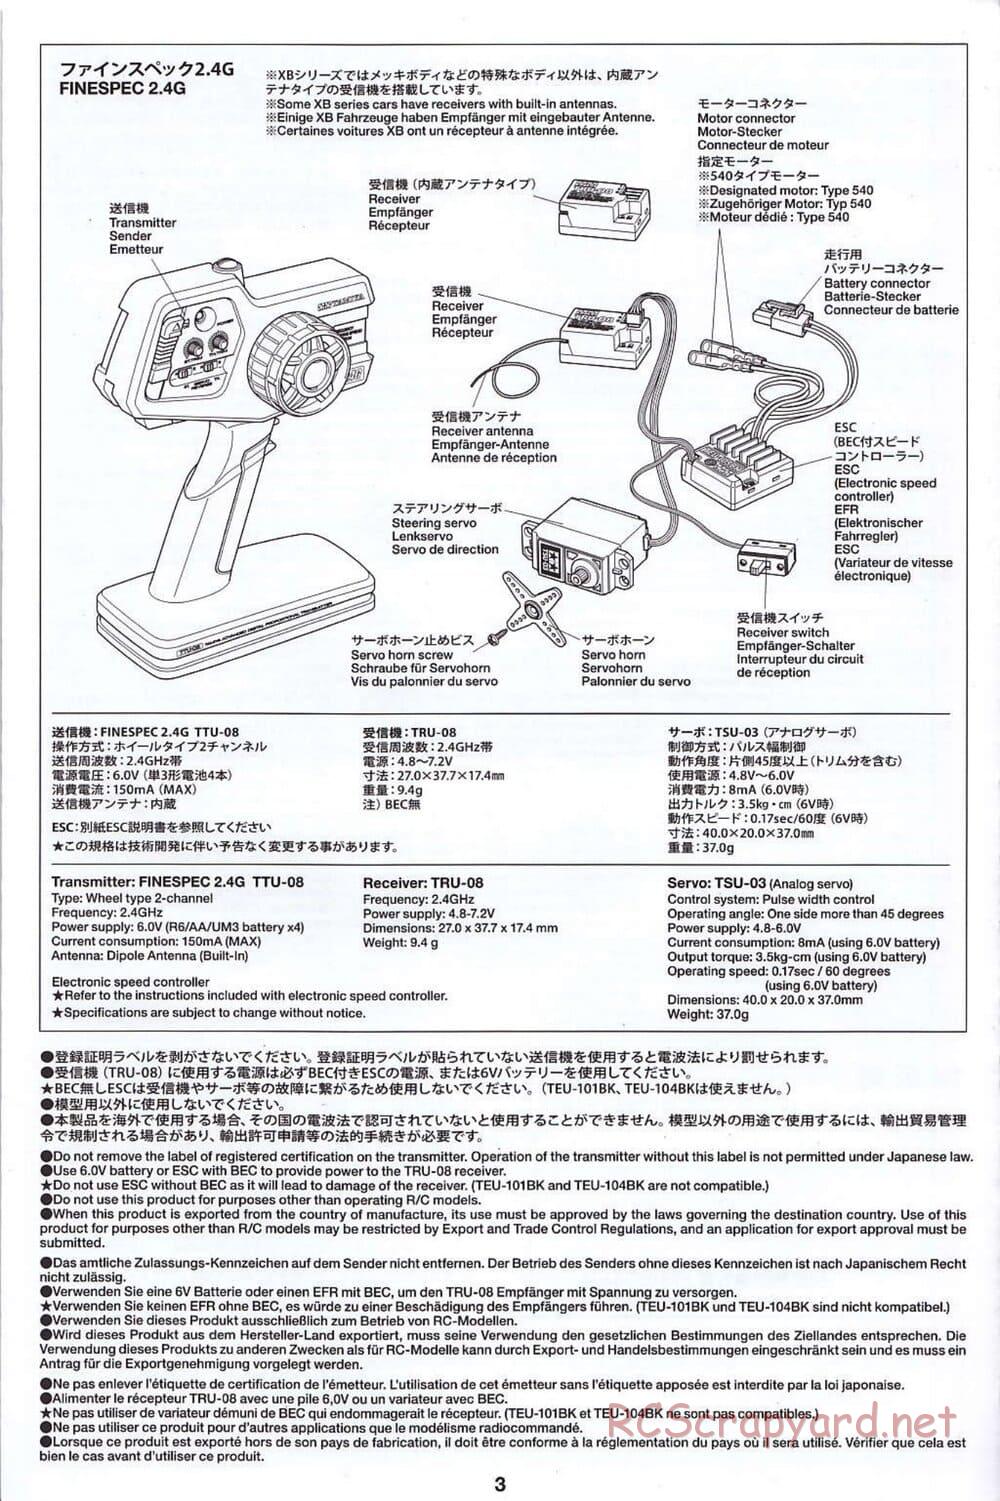 Tamiya - SA TT-02 - Radio - Manual - Page 3